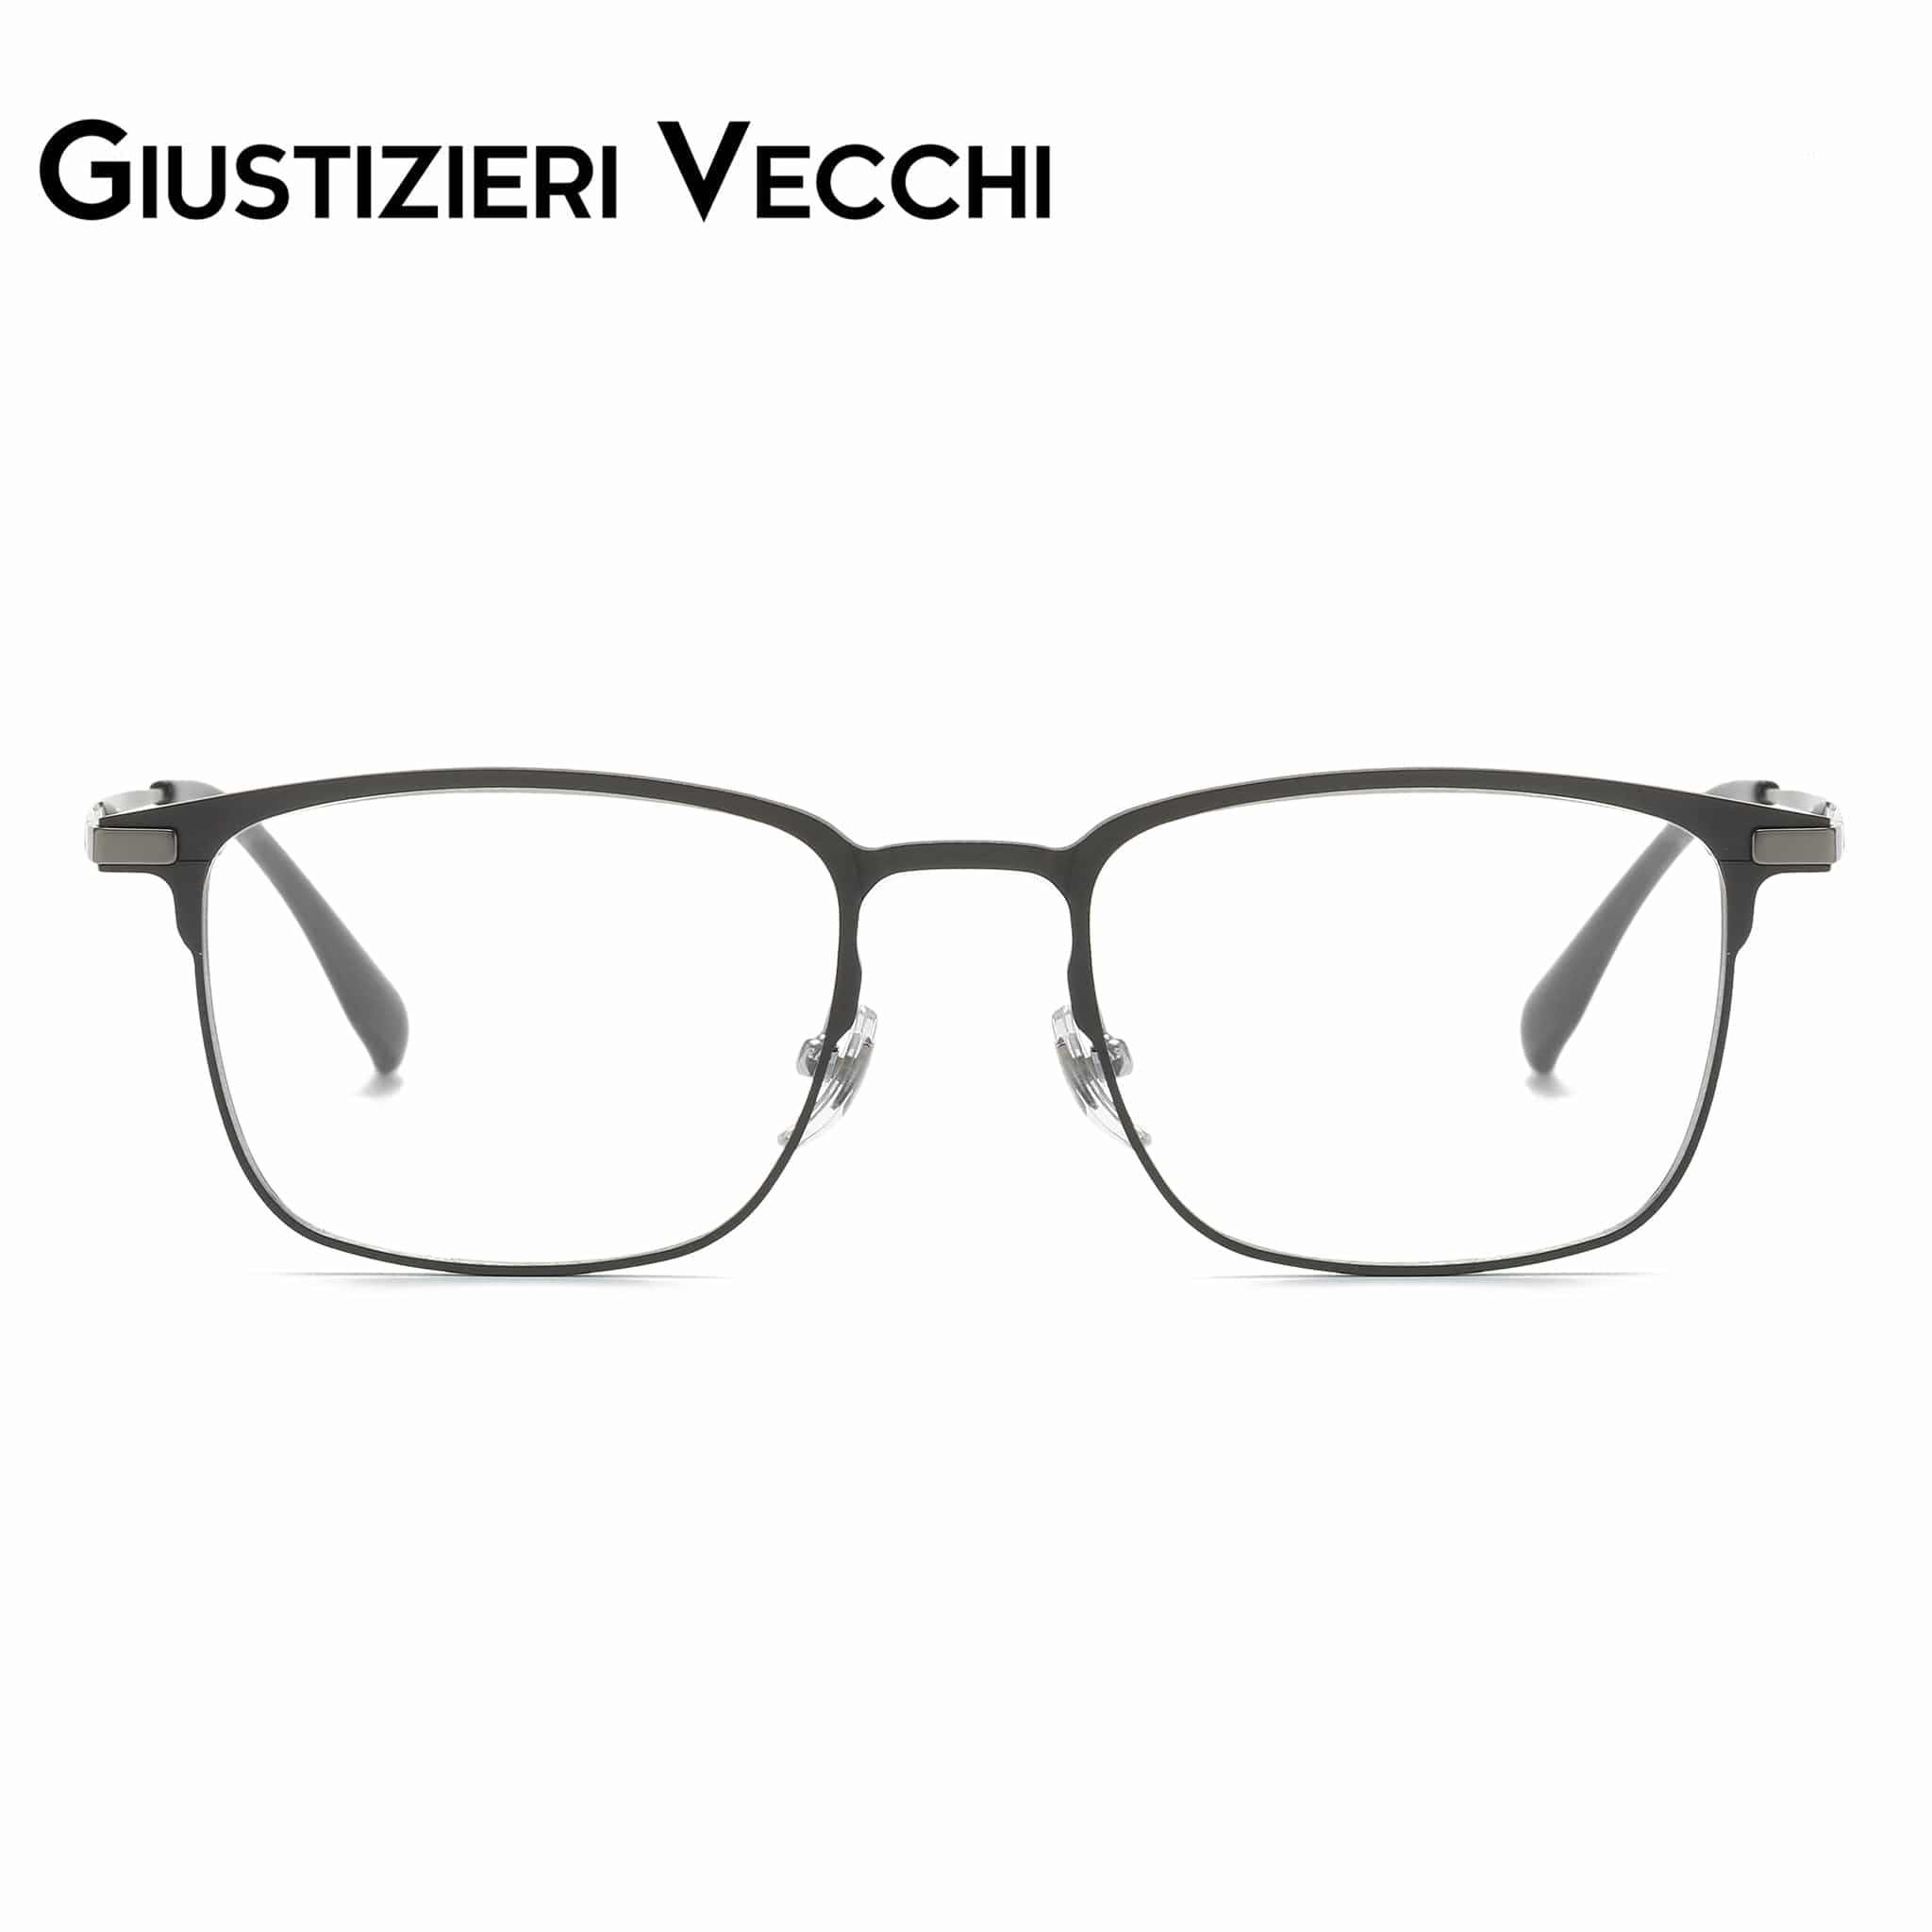 GIUSTIZIERI VECCHI Eyeglasses Medium / Brushed Gunmatal Nightfall Duo